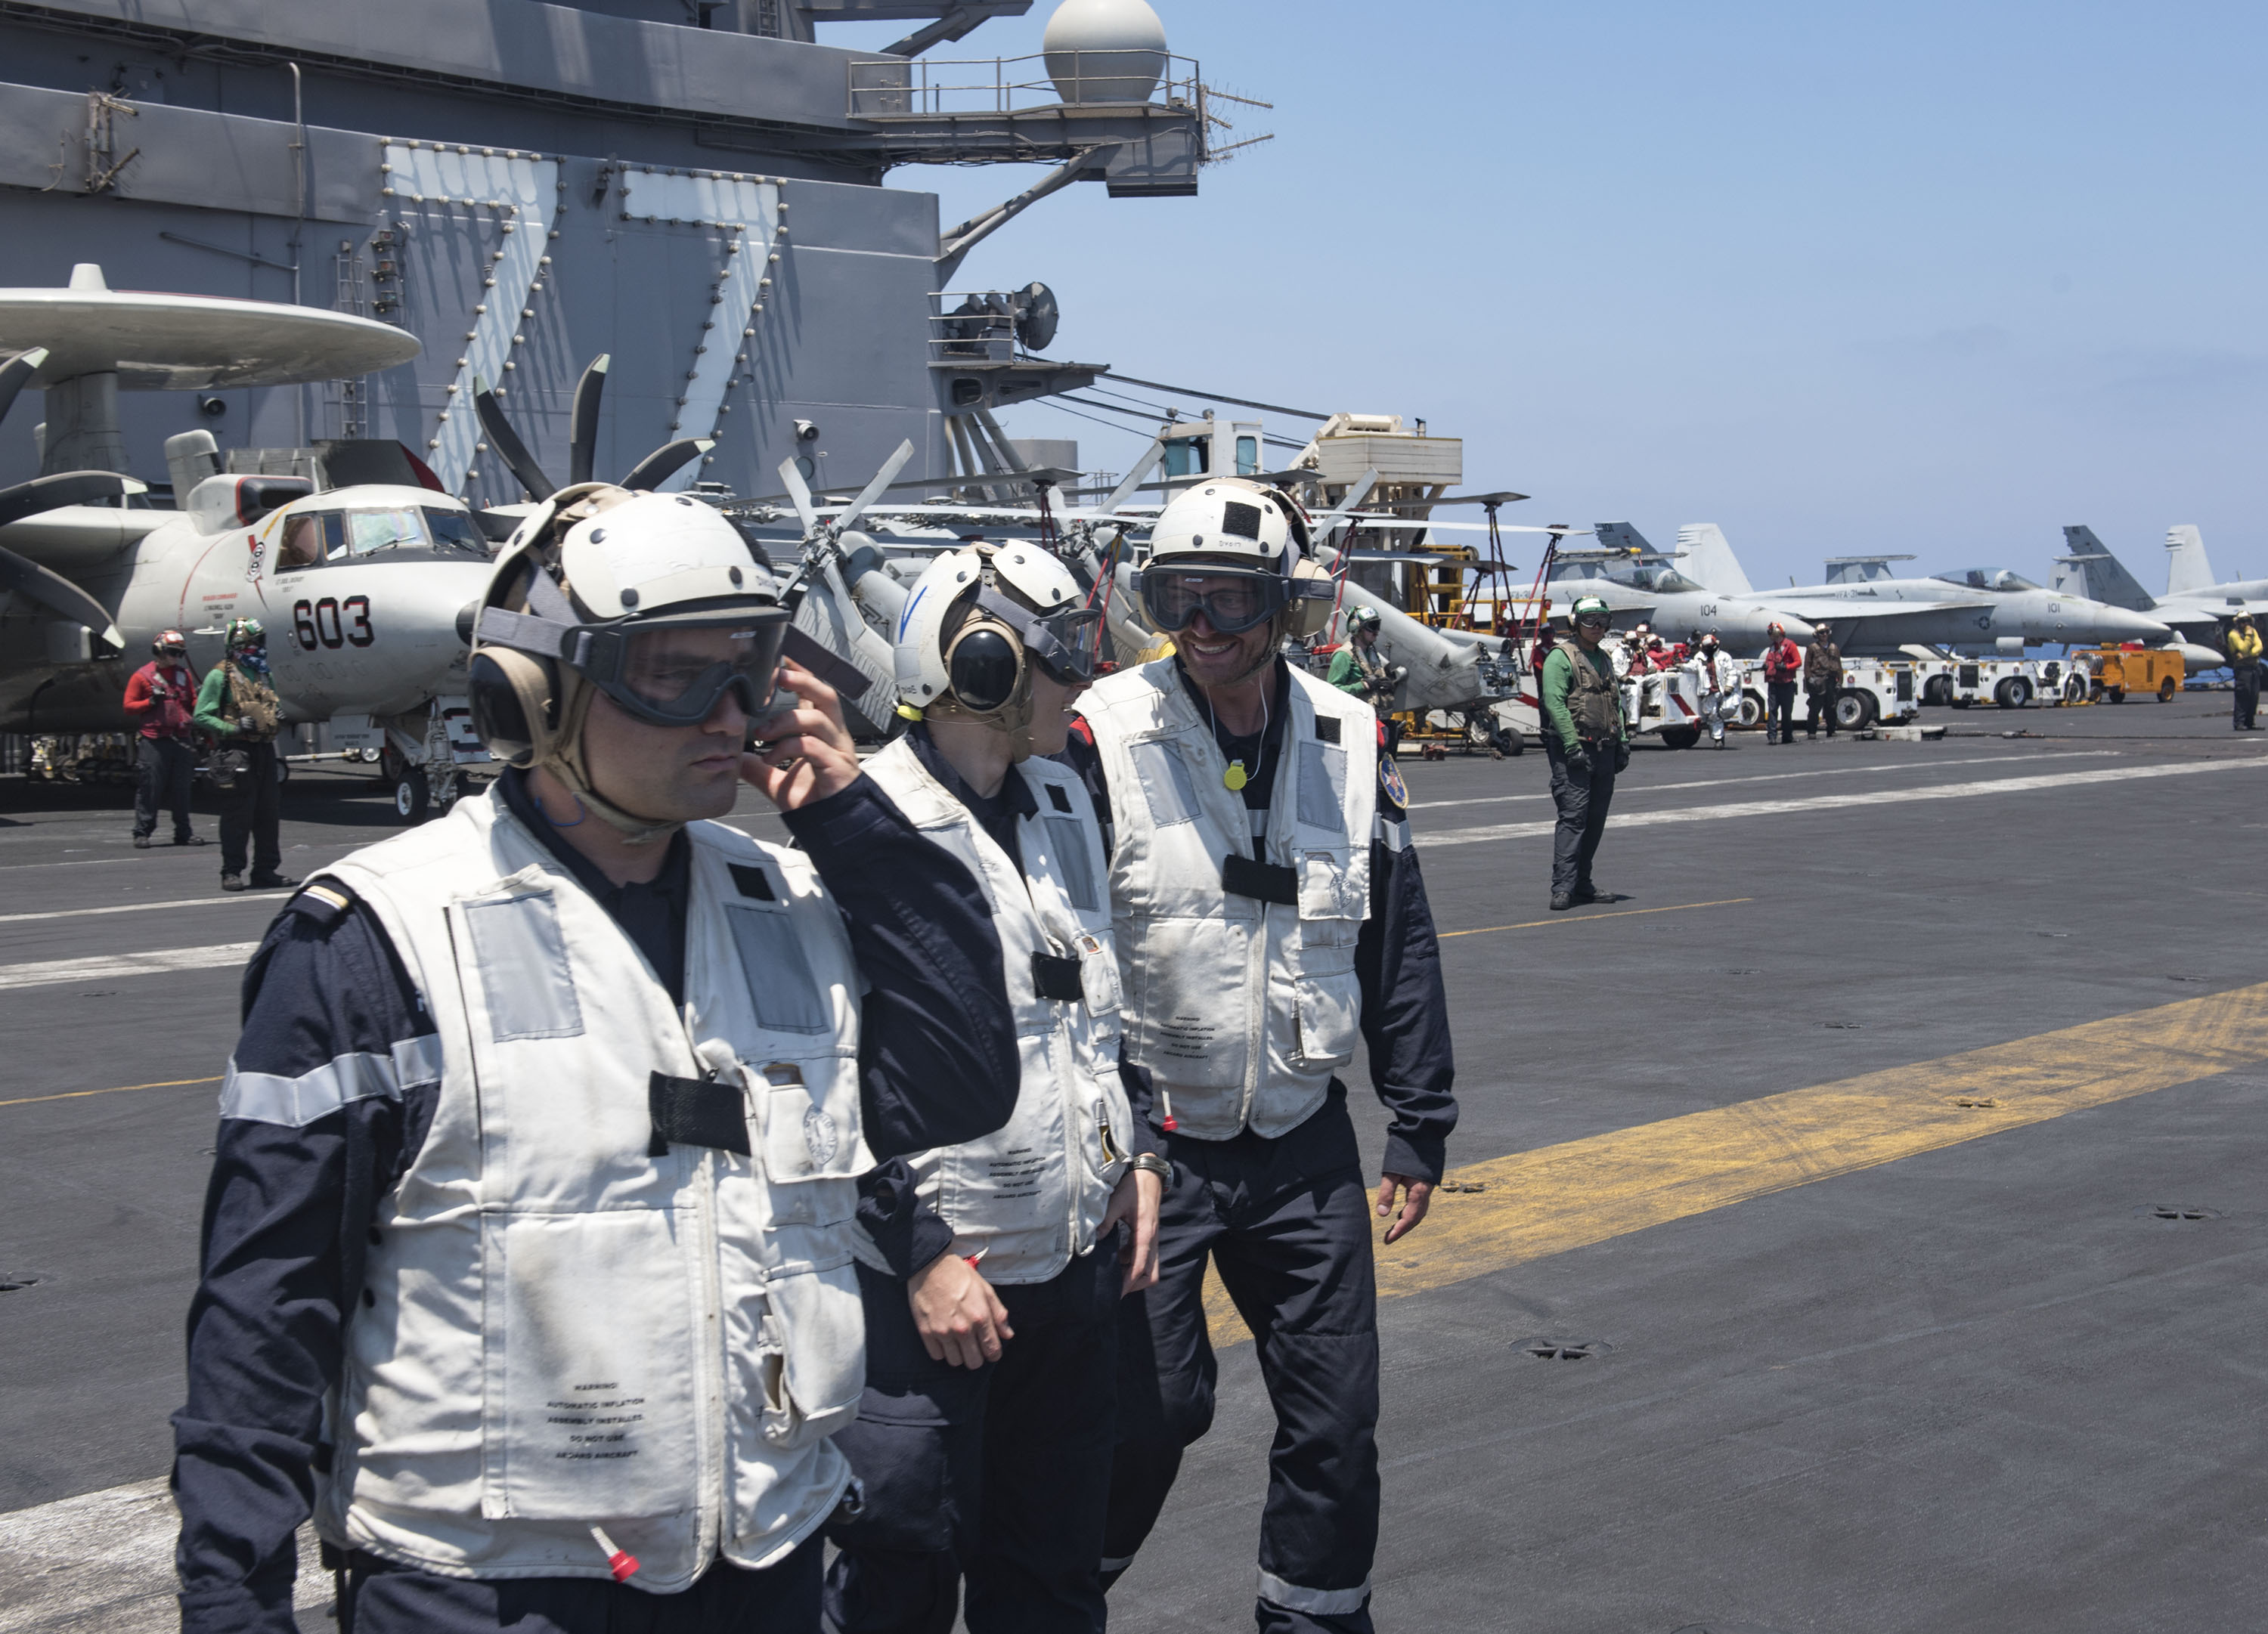 Des marins de la frégate Chevalier Paul assistent aux opérations aériennes sur le pont de l'USS George H.W. Bush